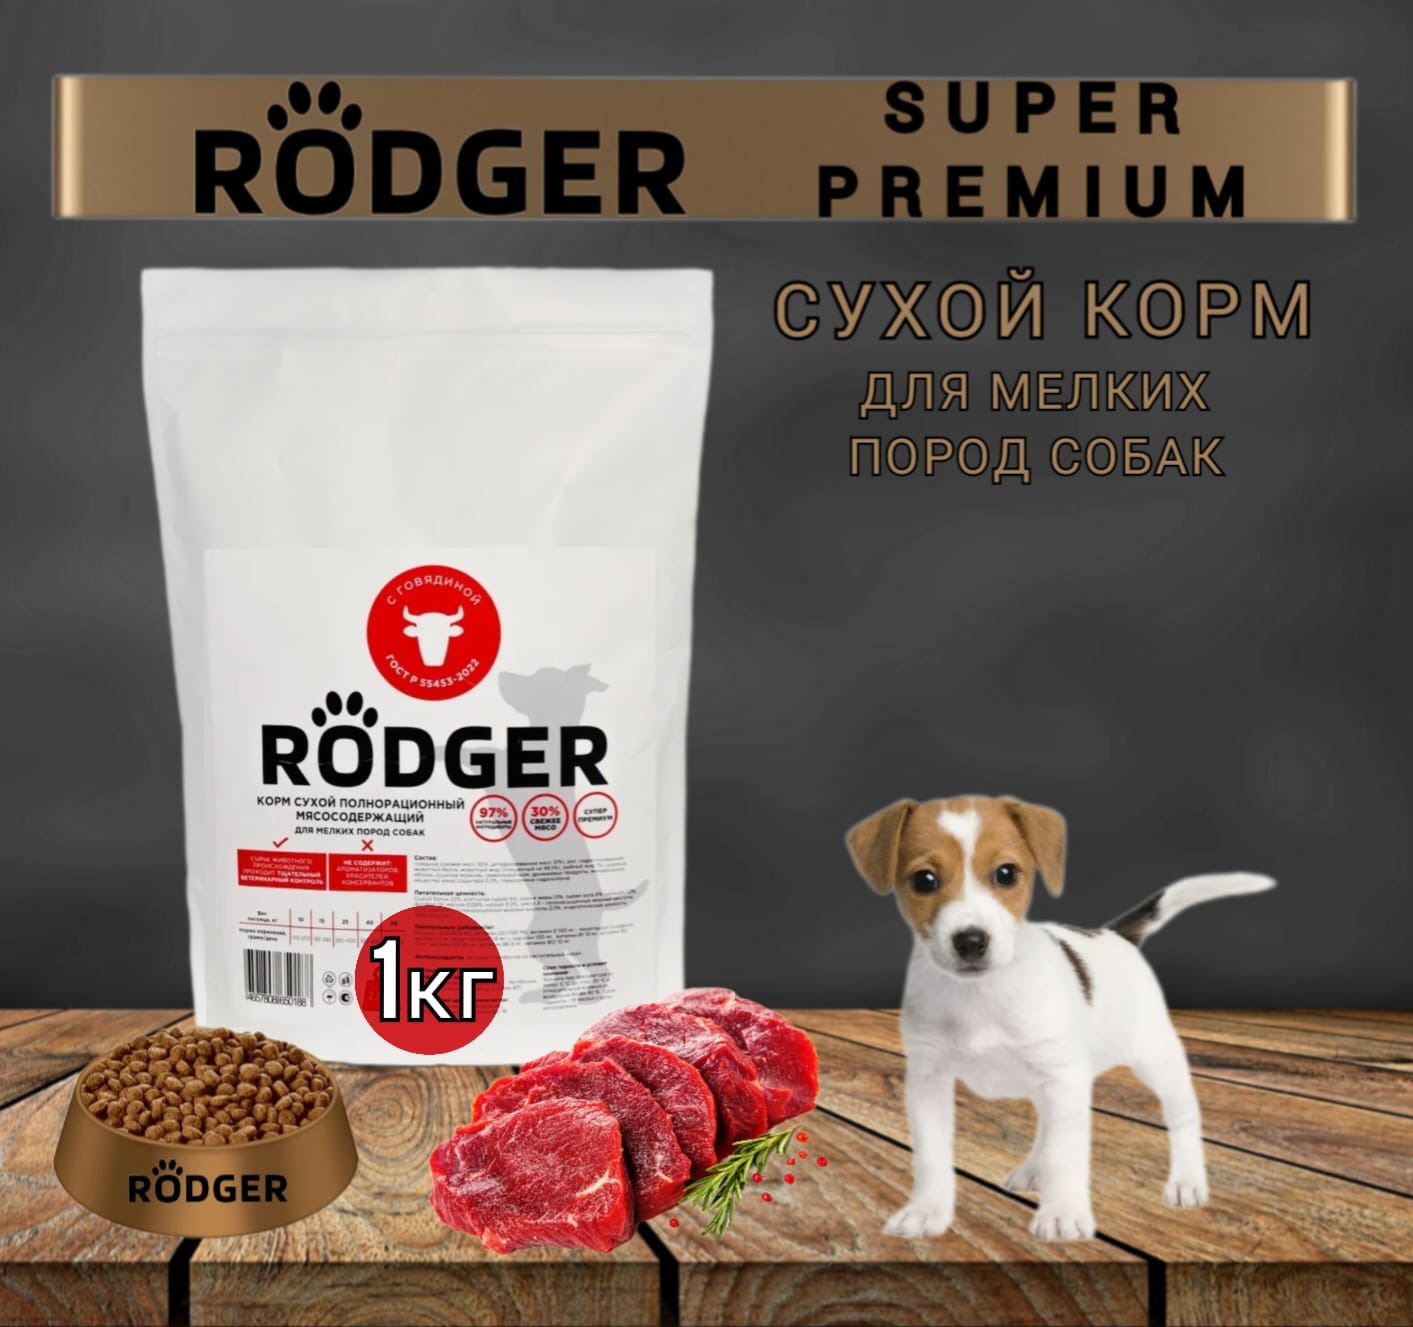 Сухой корм для собак RODGER SUPER PREMIUM, для мелких пород, говядина, 1 кг